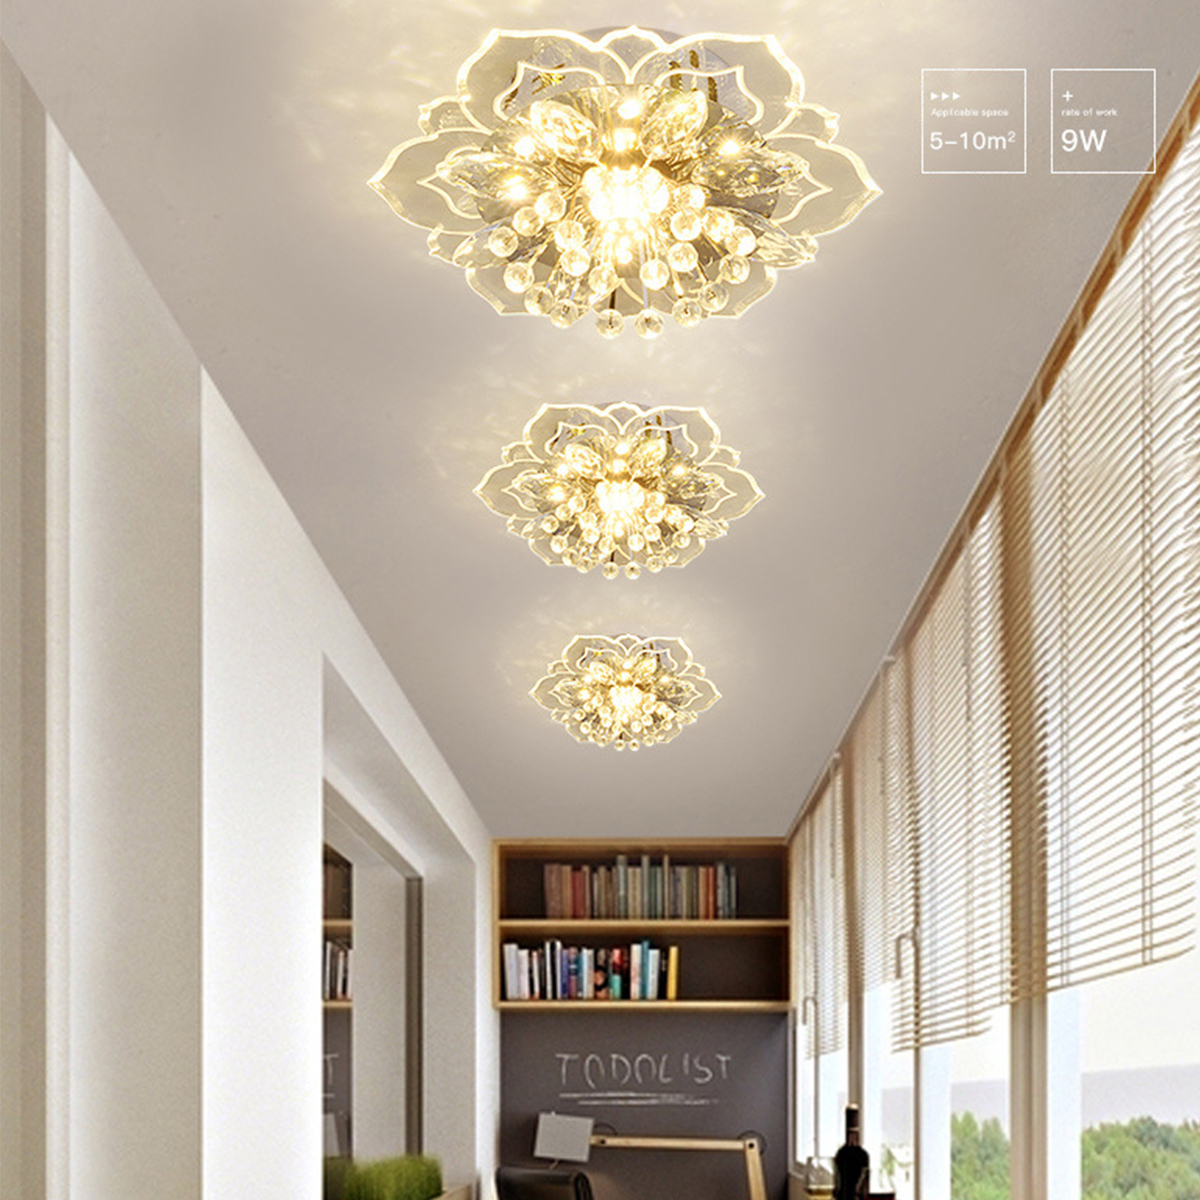 220V-Crystal-LED-Ceiling-Light-Fixture-Pendant-Modern-Lamp-Home-Room-Lighting-1768673-4